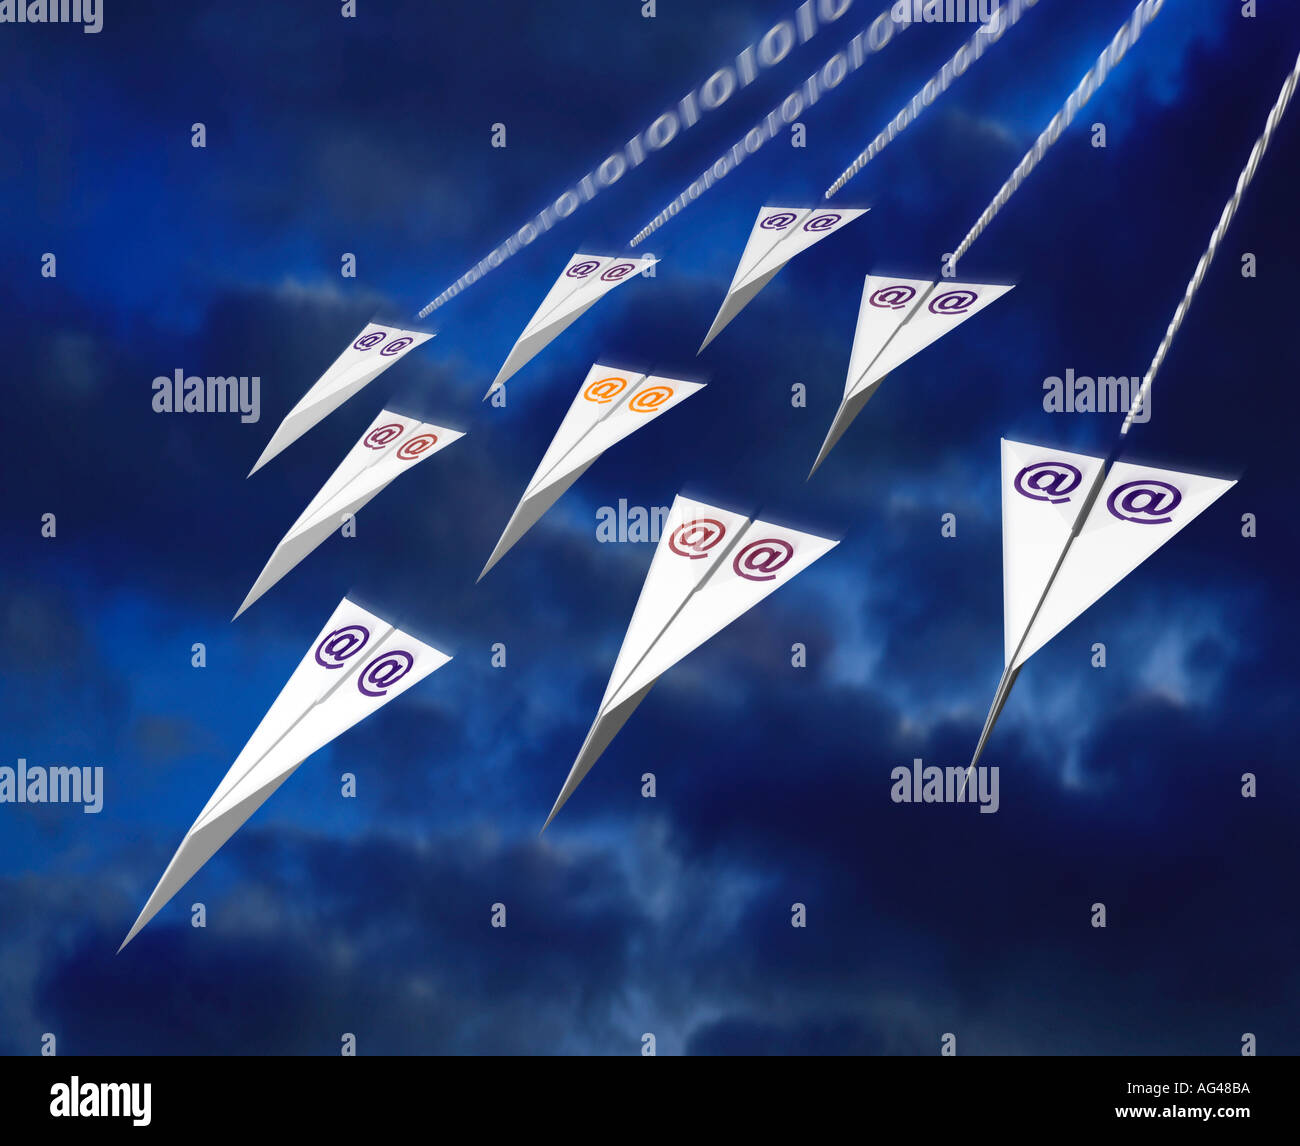 E-Mail, Nachricht, Kommunikation, dargestellt durch Papierebenen, die durch den Himmel fliegen, mit @-Symbol auf Flügeln Stockfoto